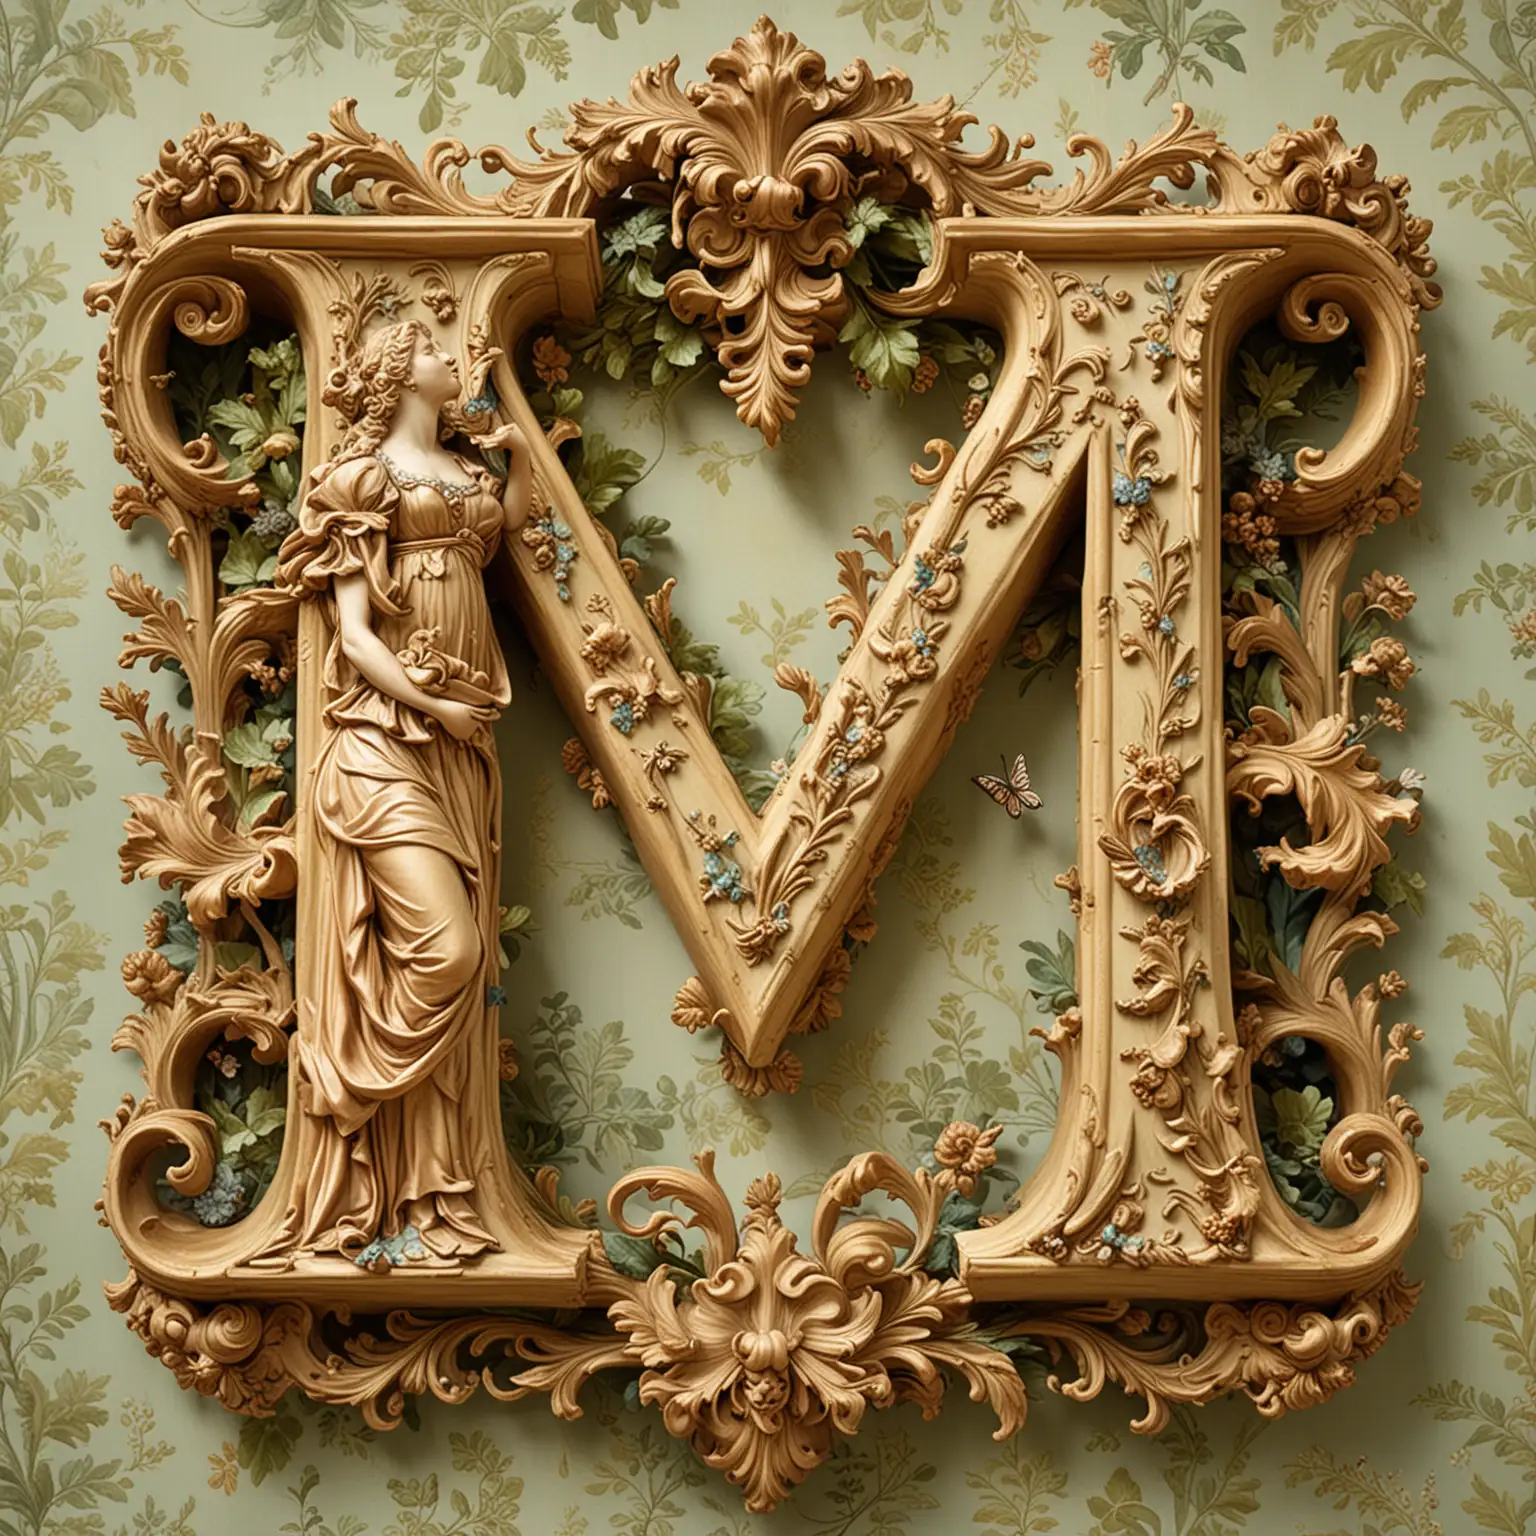 洛可可畫風, 母親環抱著一個大大的字母M ,字母M是春天的山林